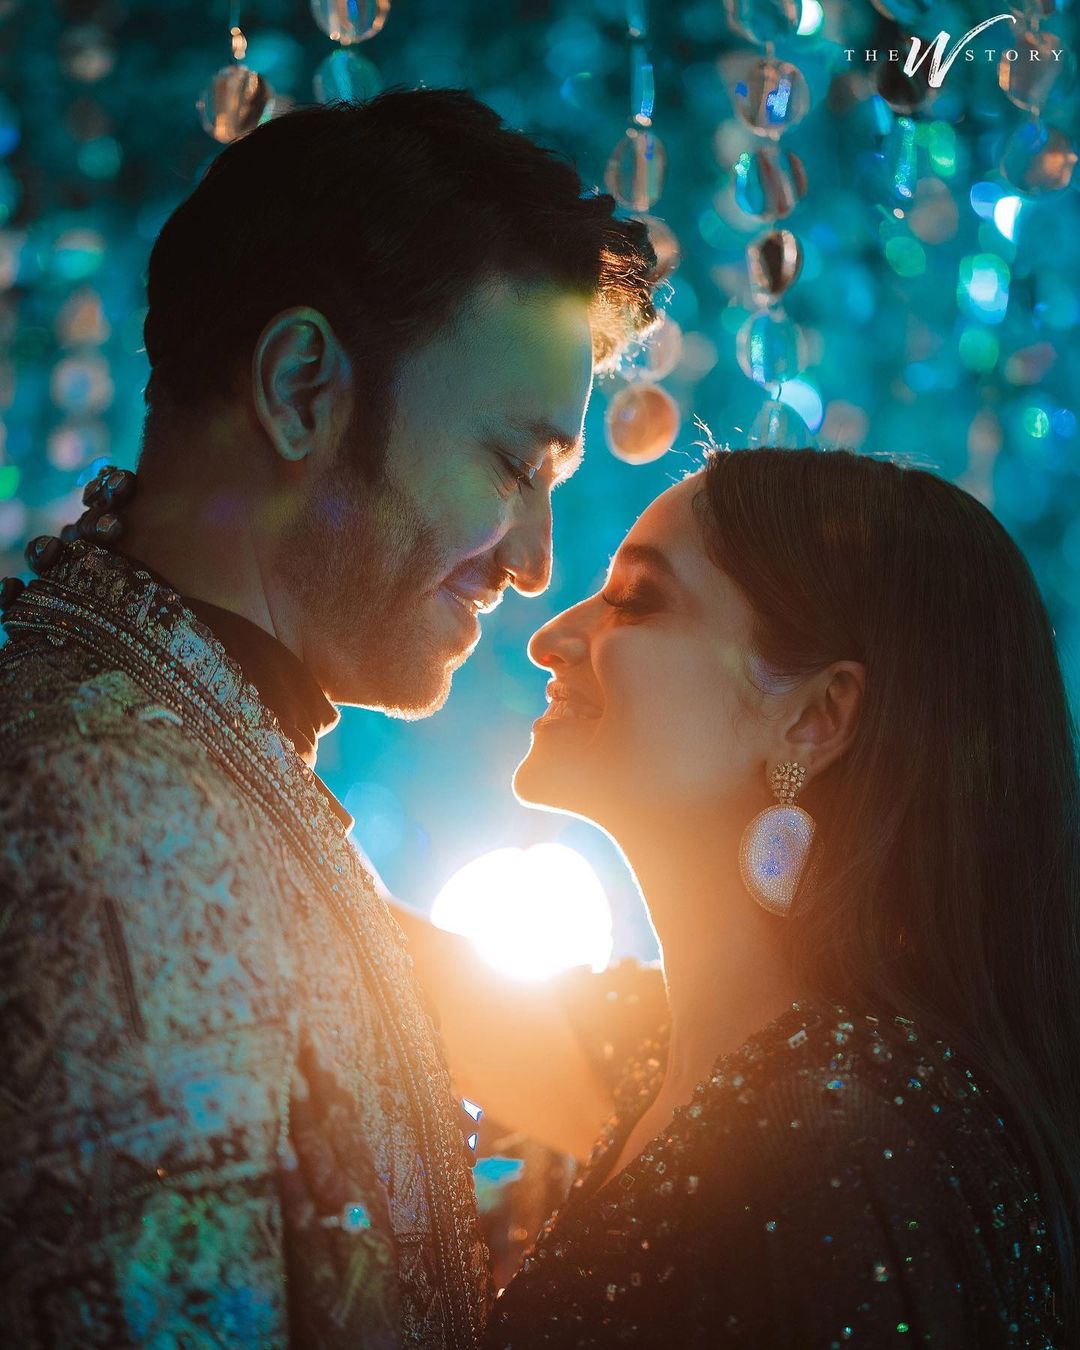 Ankita Vicky Wedding Latest Photos : अंकिता -विक्की की सगाई की Inside Photos, जमाने के सामने किया प्यार का इजहार देखें तस्वीरें